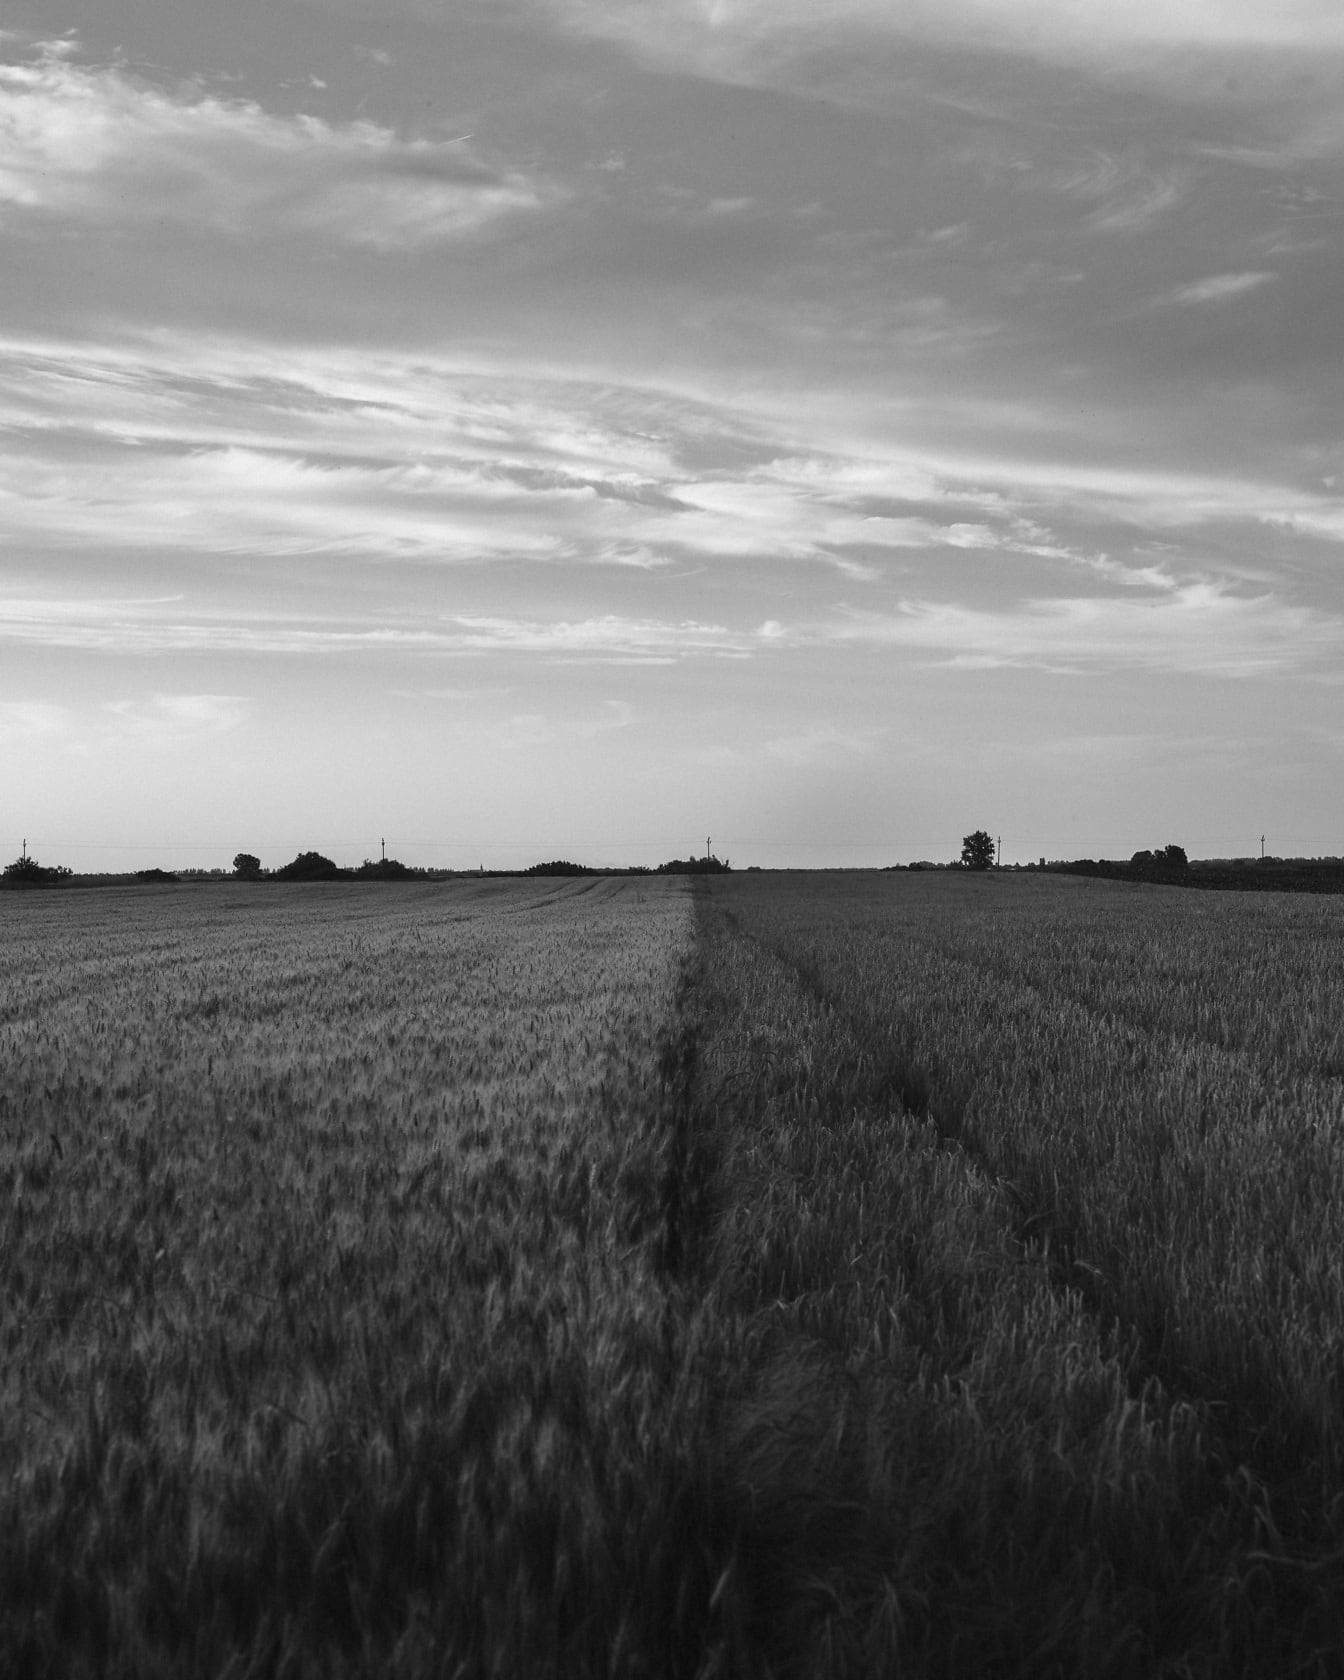 Ladang gandum dan jelai flat field foto hitam putih